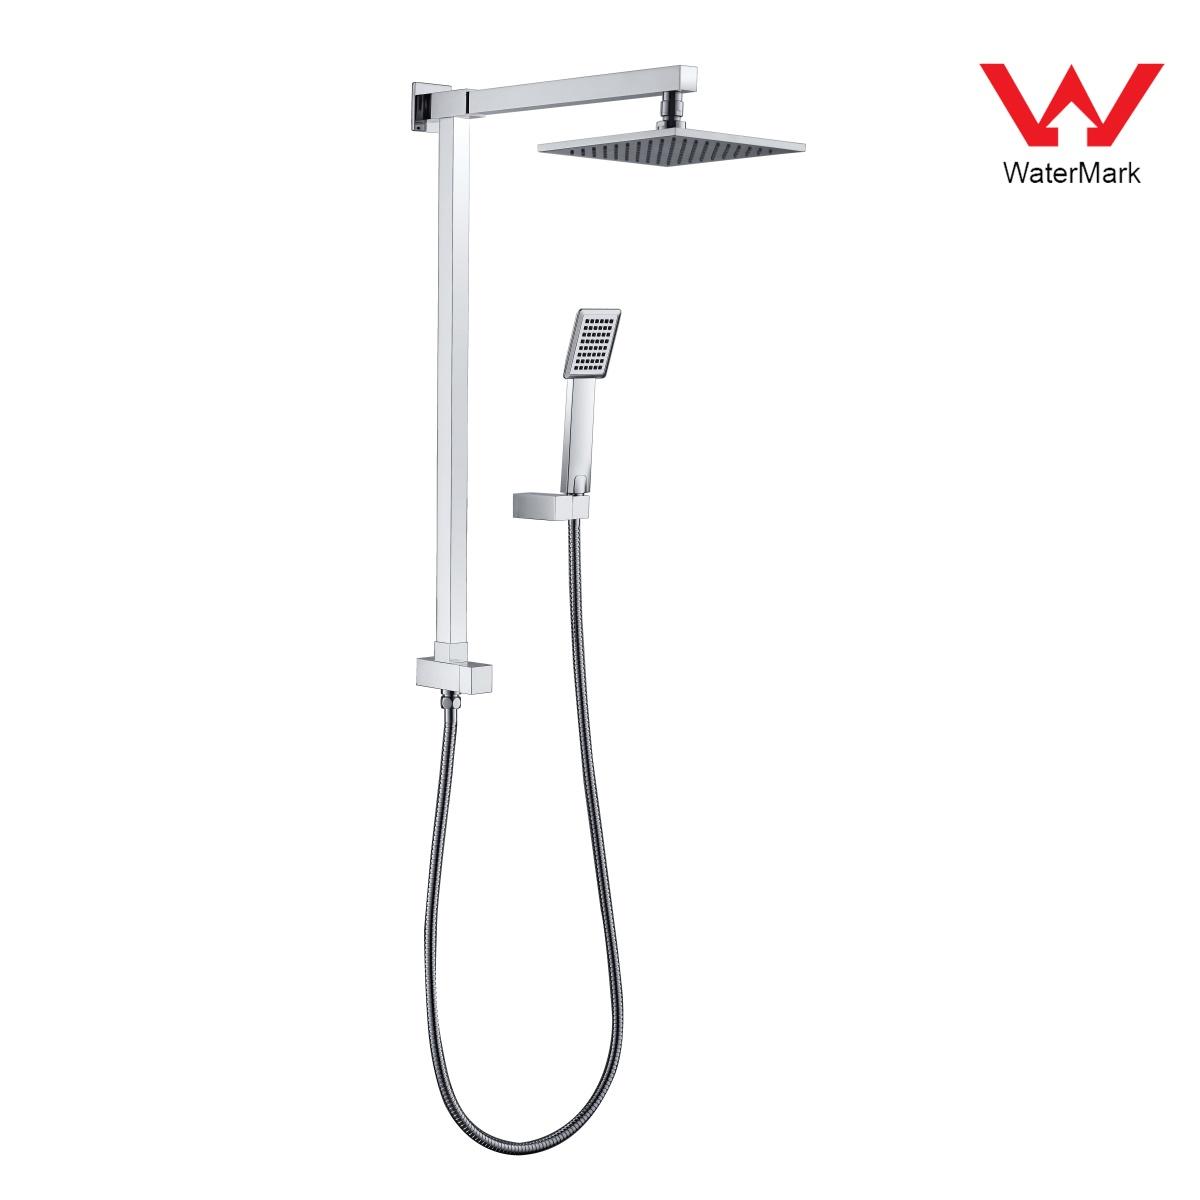 DA610021CP Watermark minősítésű zuhanykészletek, esőzuhany készlet, tolózuhany készlet;